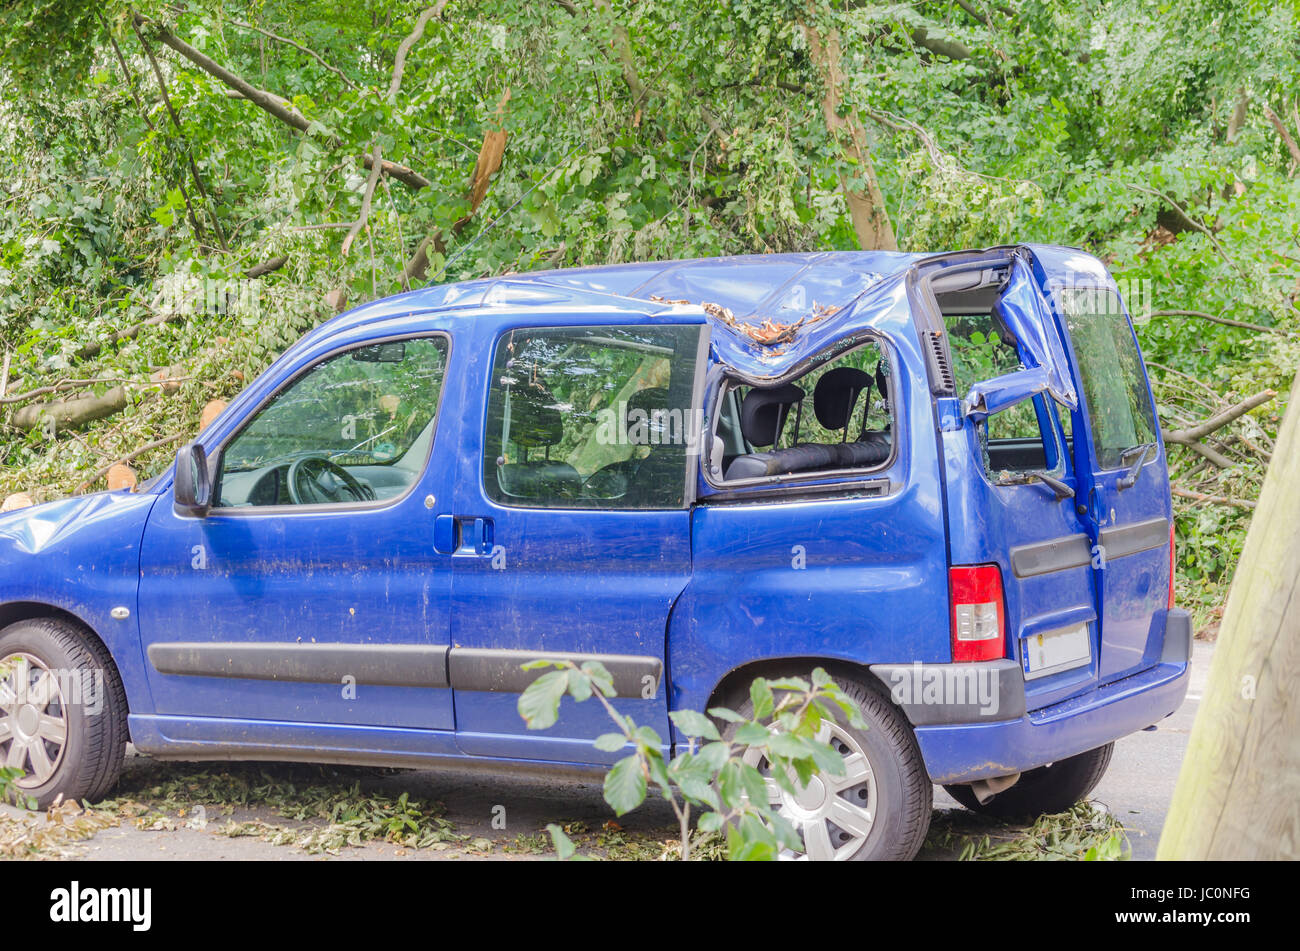 ESSEN, GERMANY - JUNI, 13.2014: Auto nach Sturmschaden Anfang Juni, nachdem ein großer Baum auf das Auto gefallen ist. Stock Photo